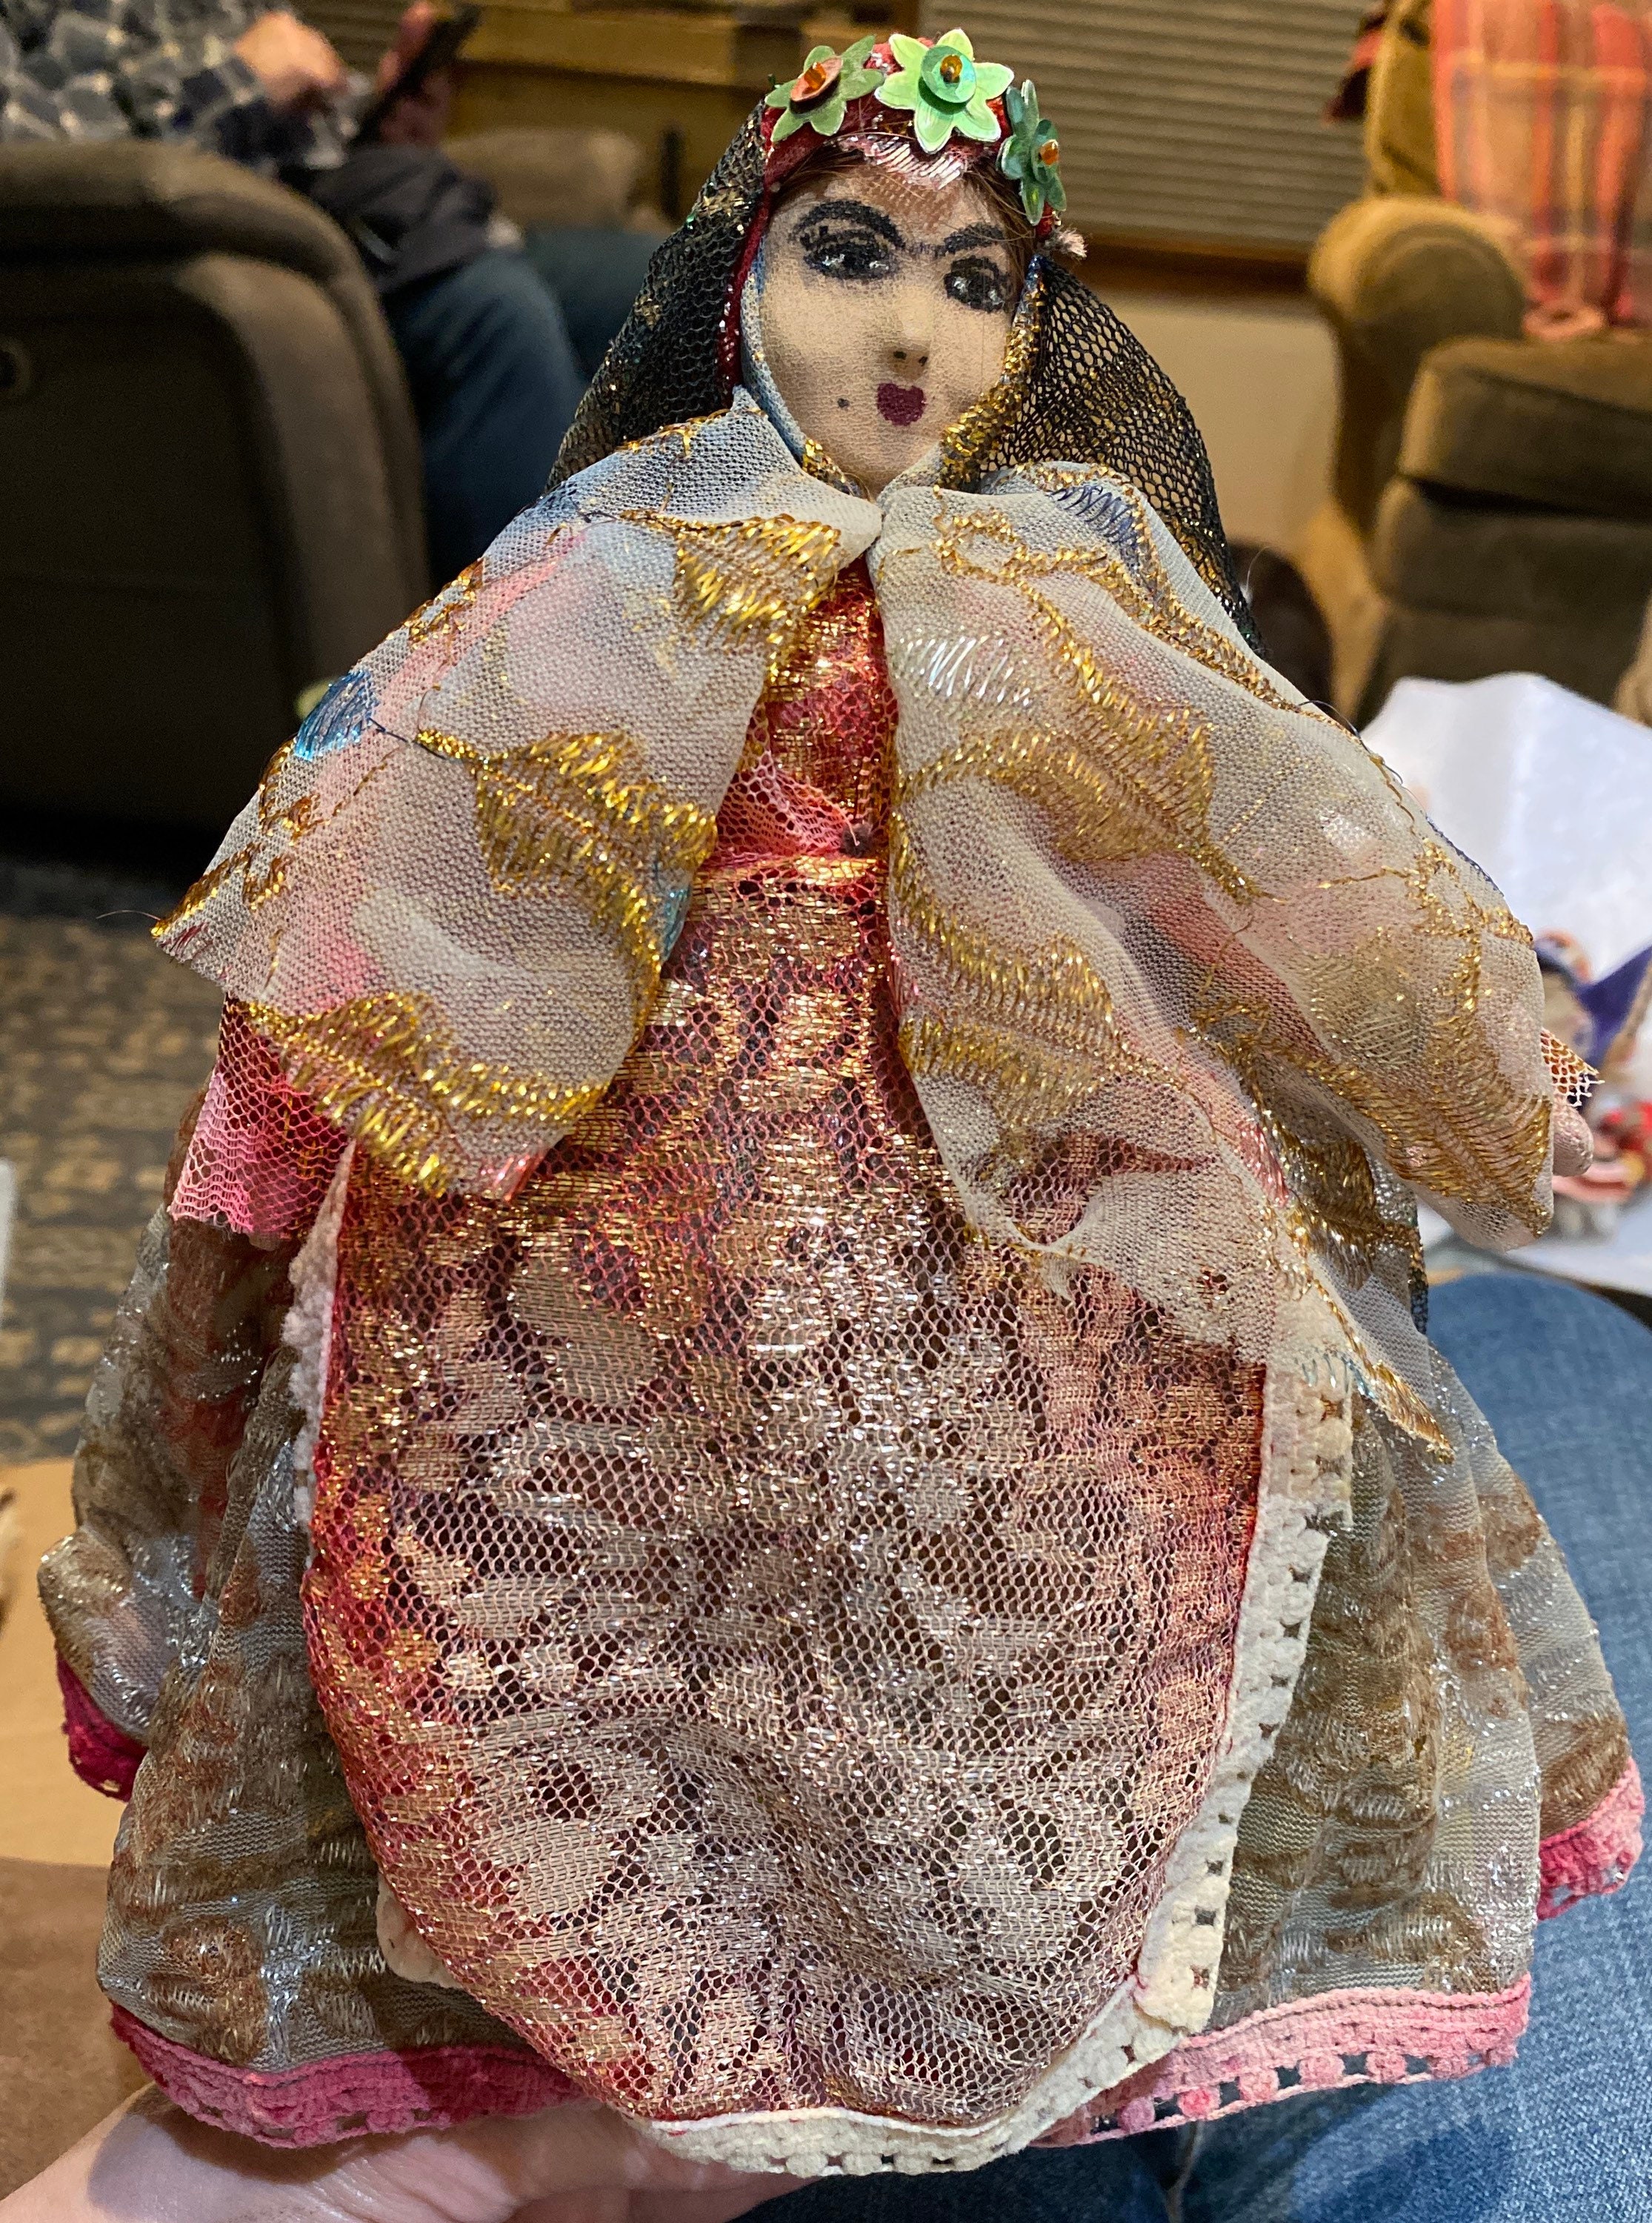 Belle poupée femme peinte à la main artisanale du Moyen-Orient